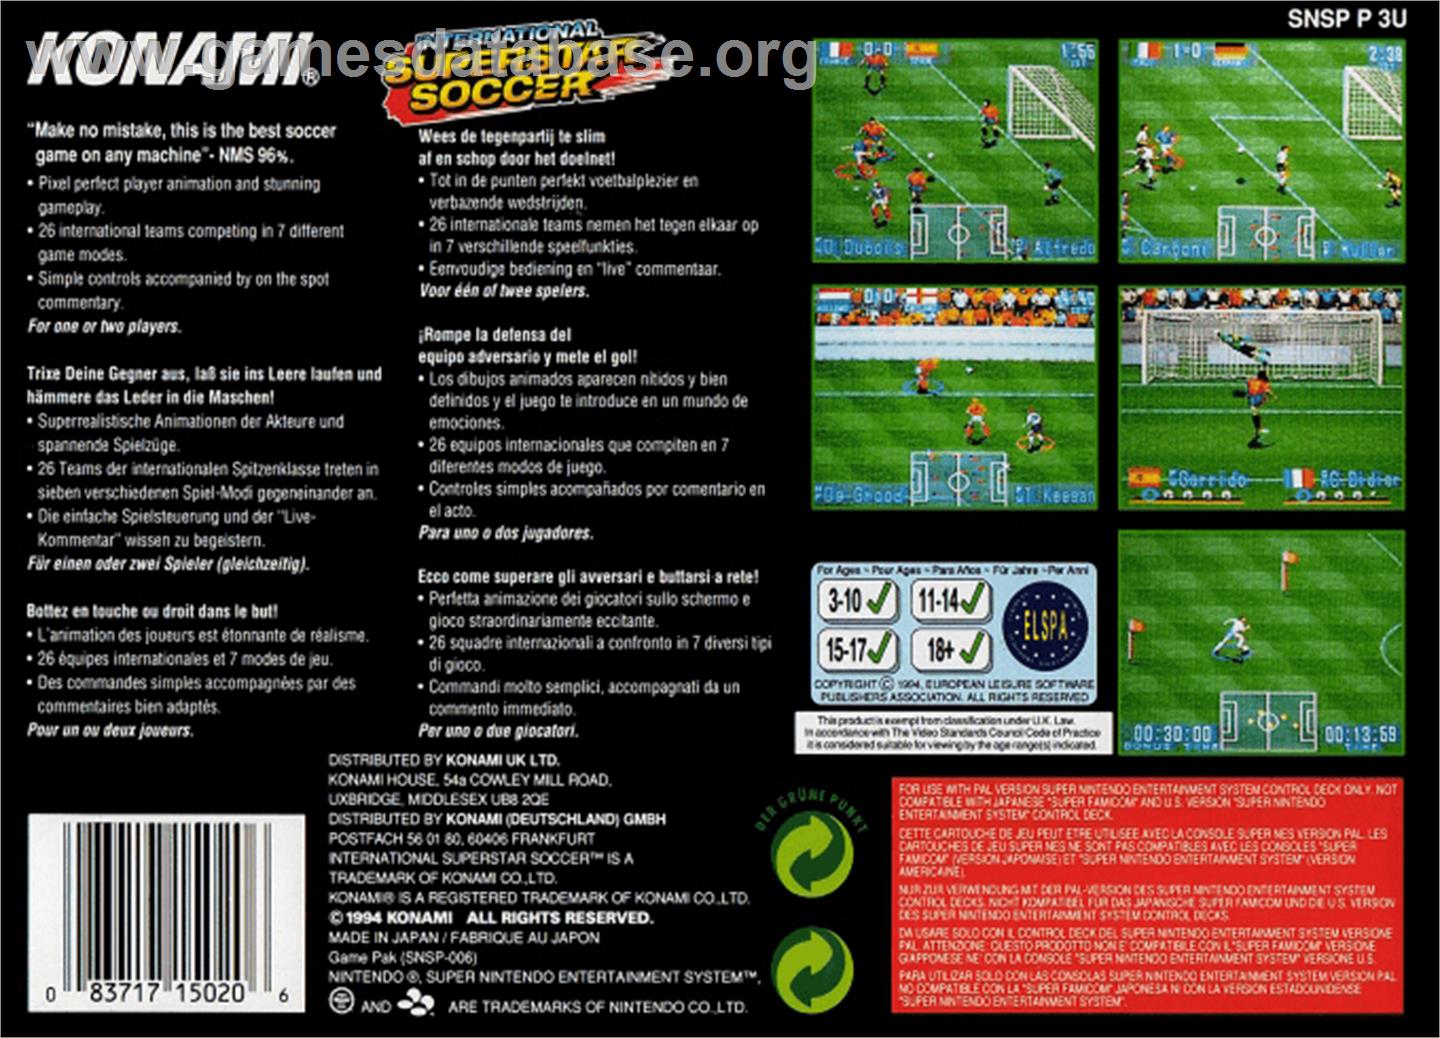 International Superstar Soccer - Nintendo SNES - Artwork - Box Back